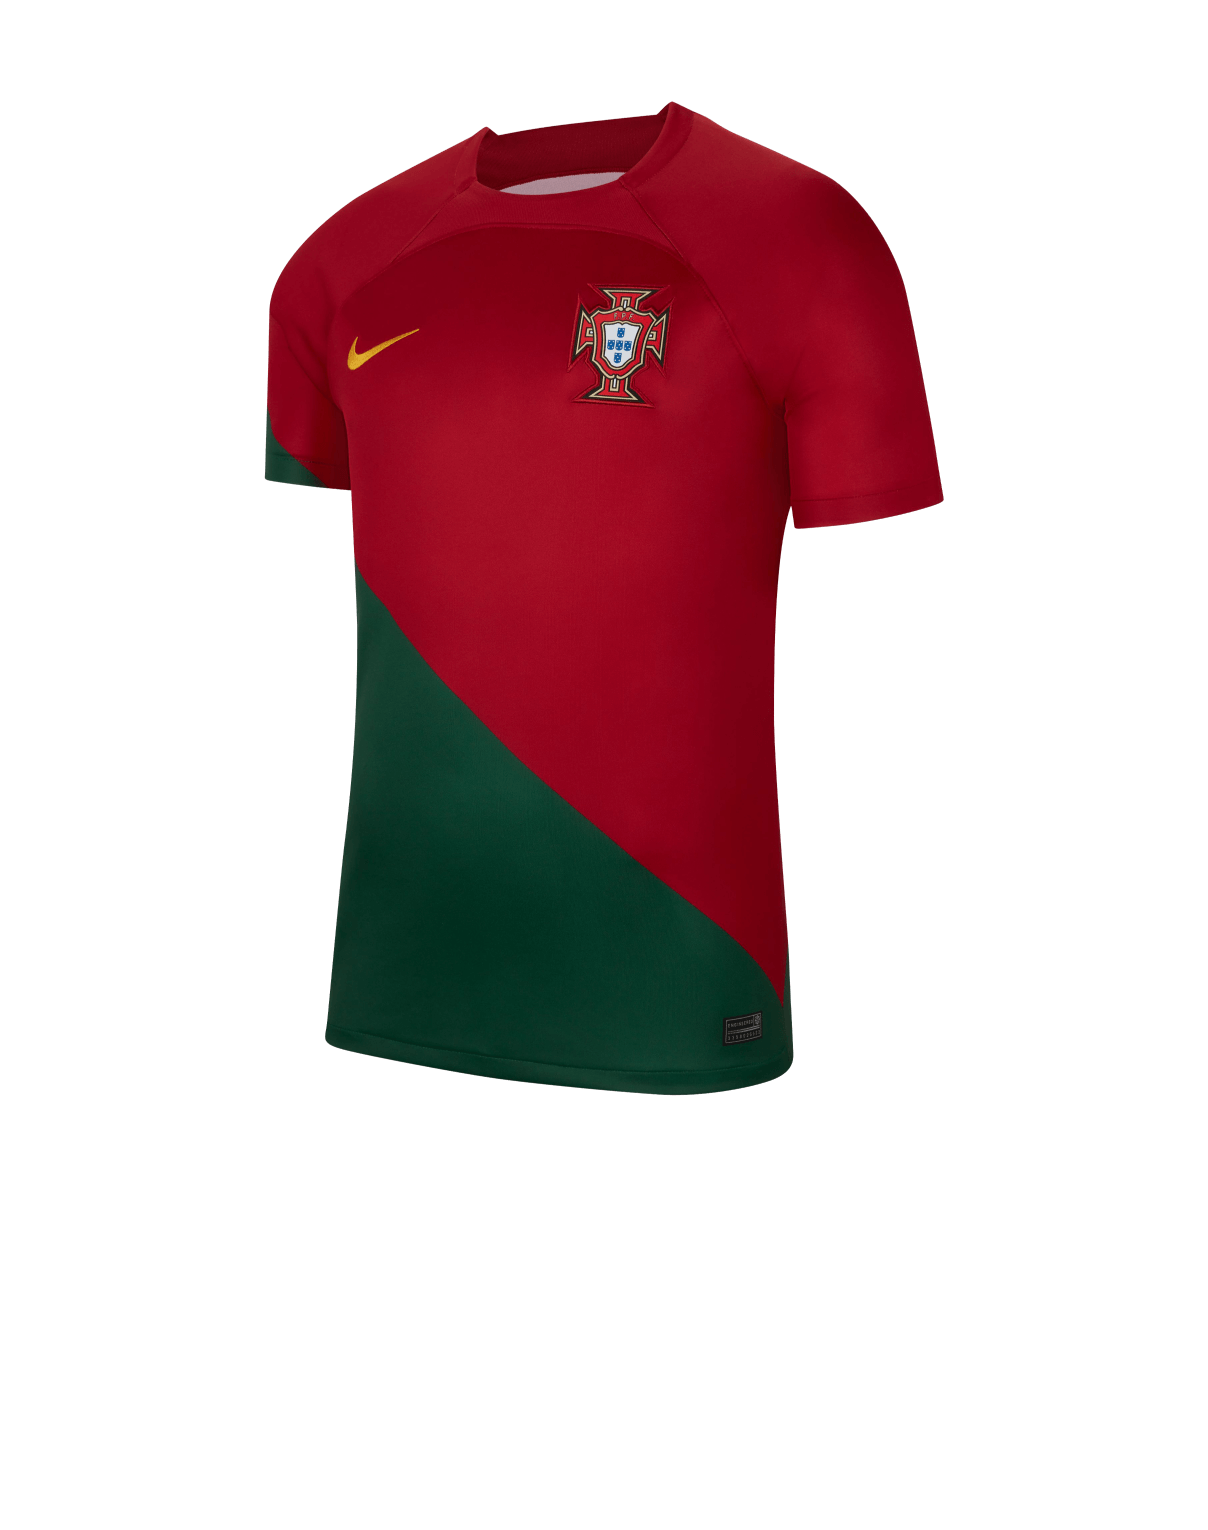 T-Shirt Maillot Football Homme Brésil - Supportez Votre Équipe Préférée